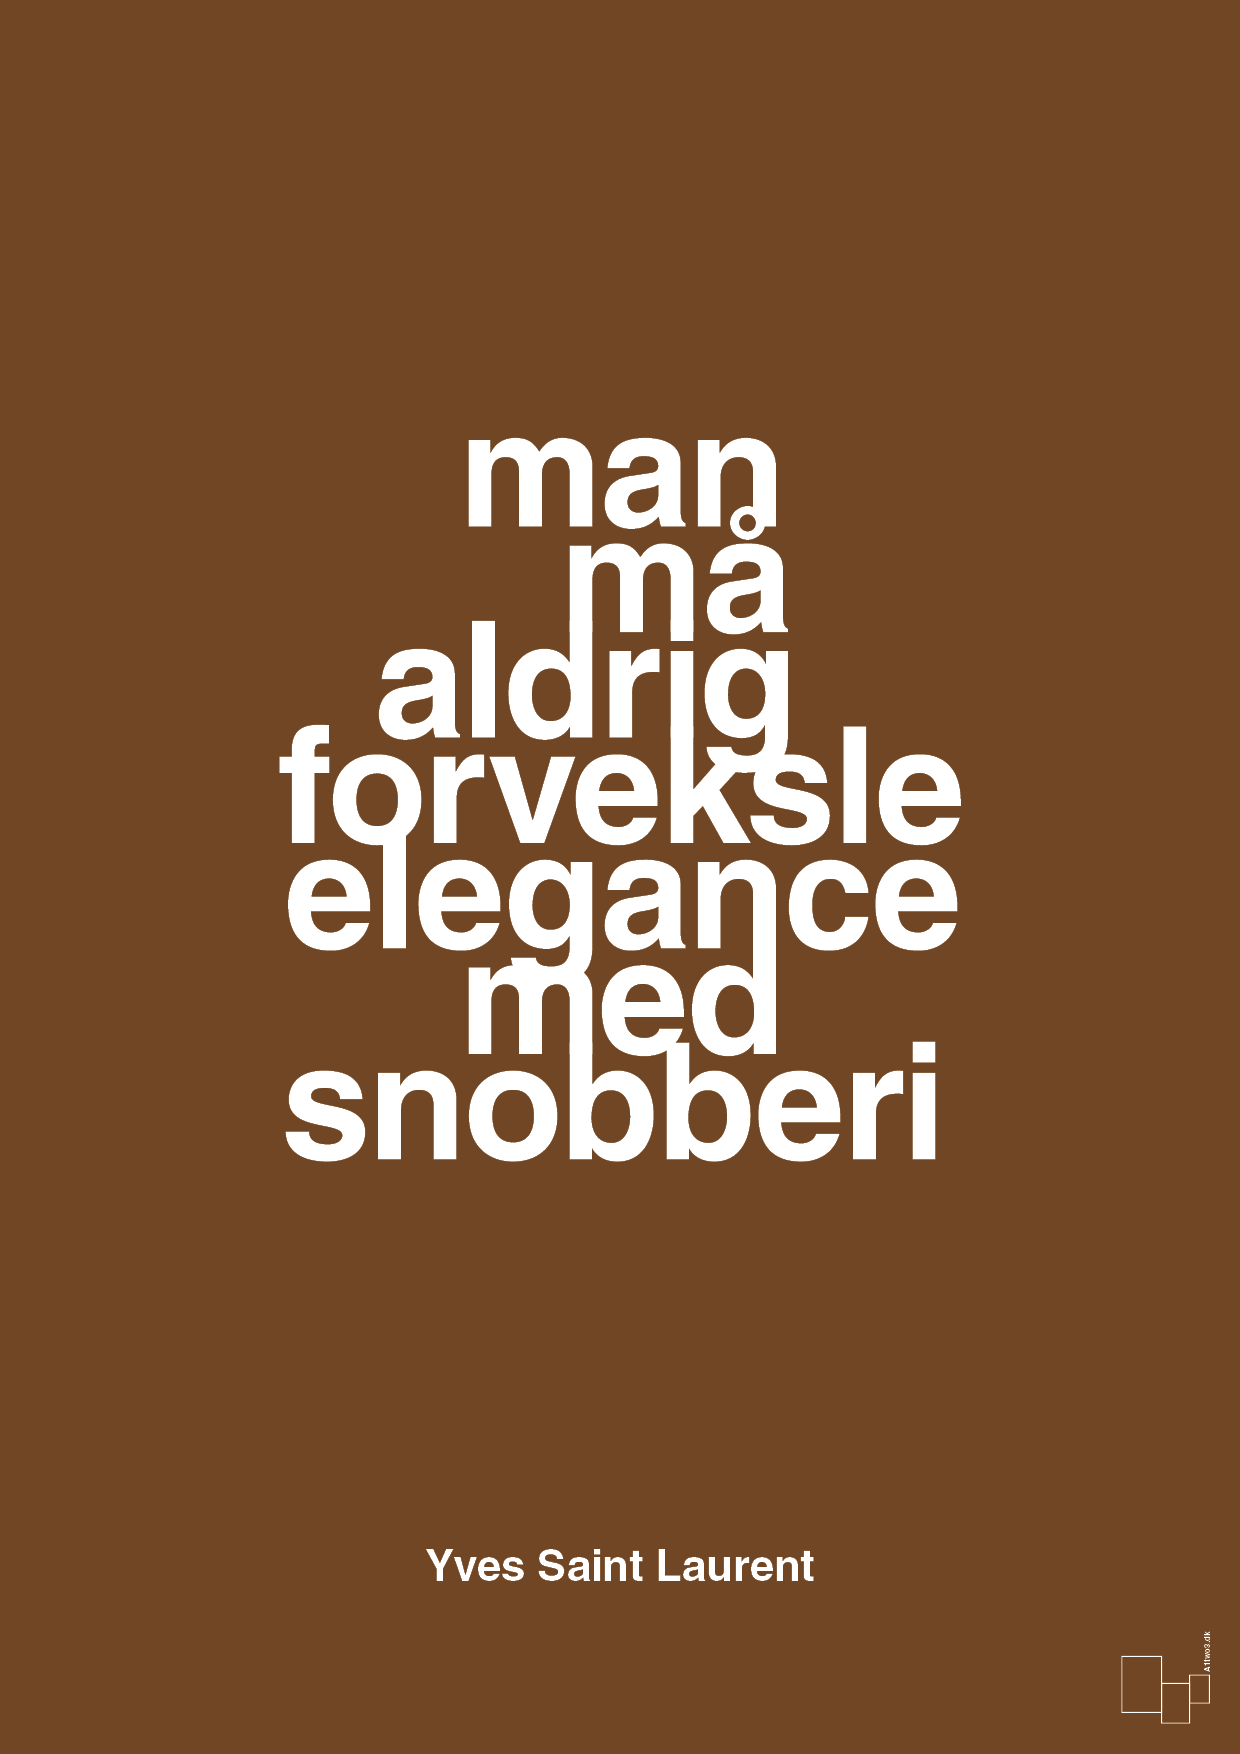 man må aldrig forveksle elegance med snobberi - Plakat med Citater i Dark Brown